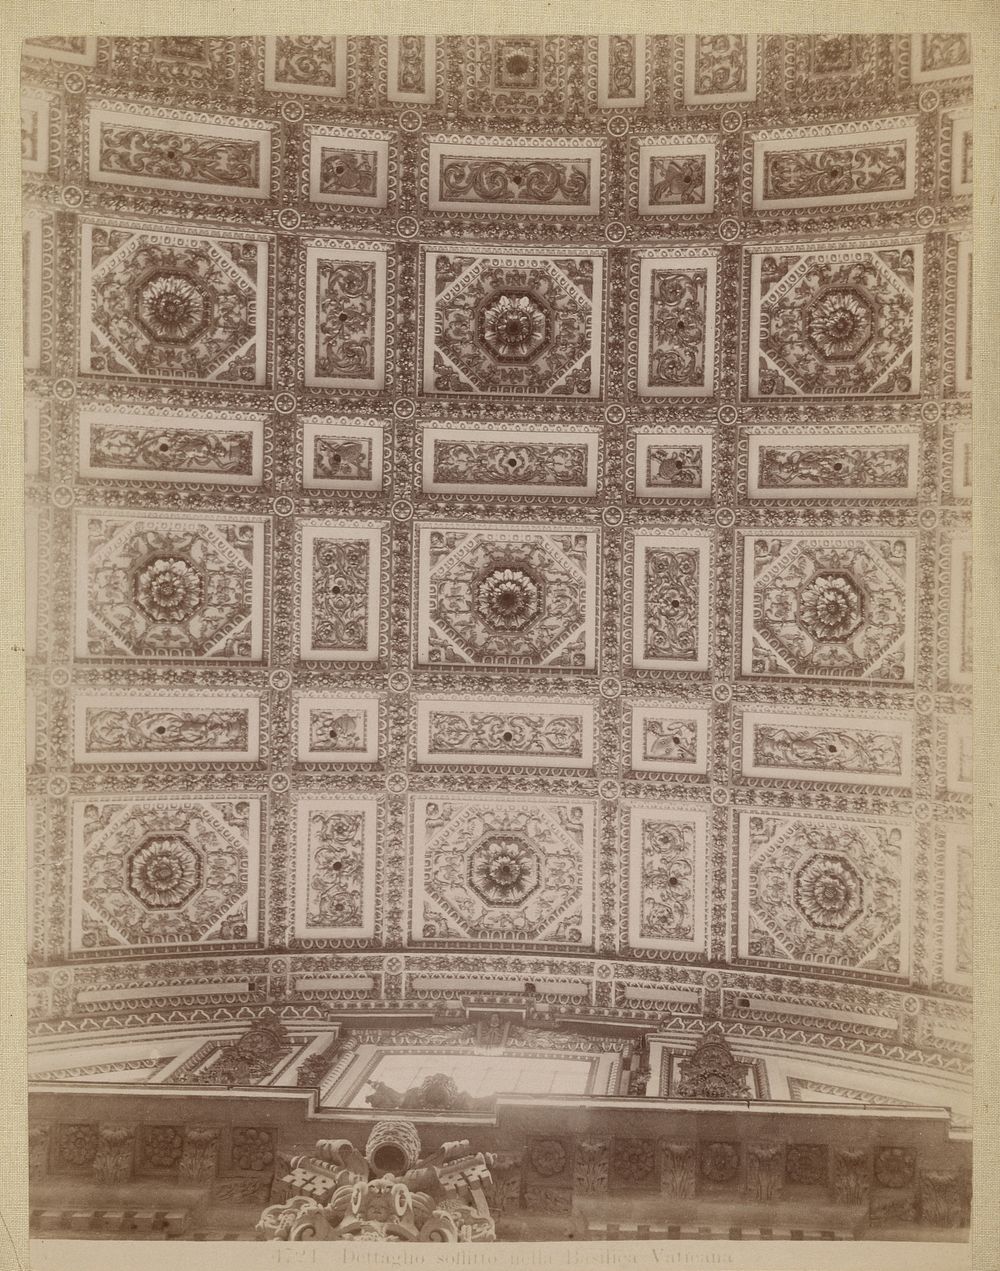 Dettaglio soffitto nella Basilica Vaticana